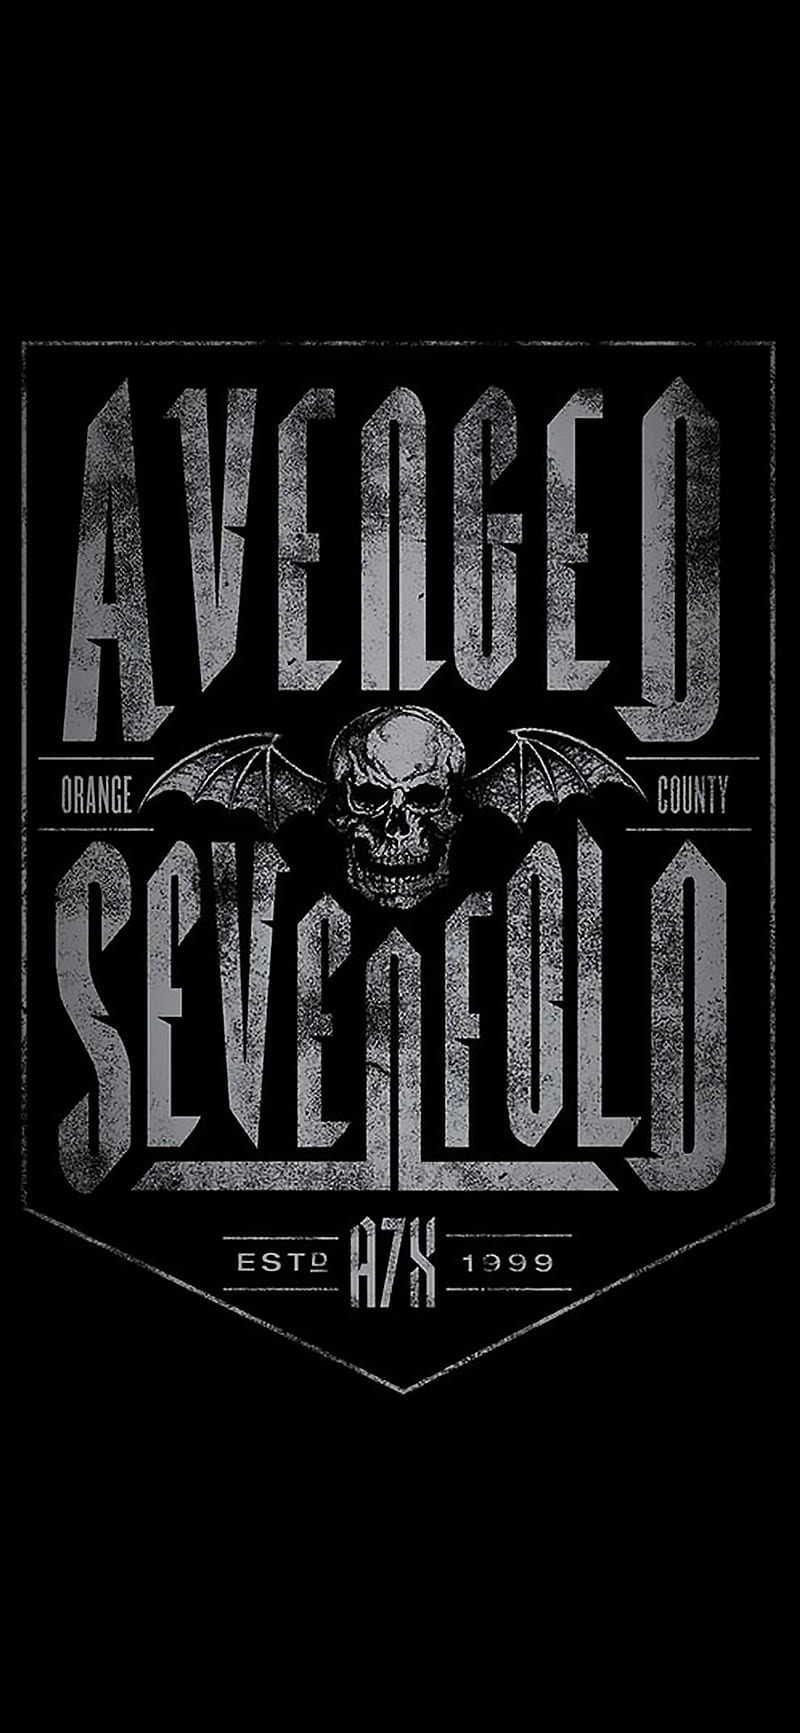 avenged sevenfold, a7x, deathbat, sevenfold logo, t-shirt graphics, HD phone wallpaper